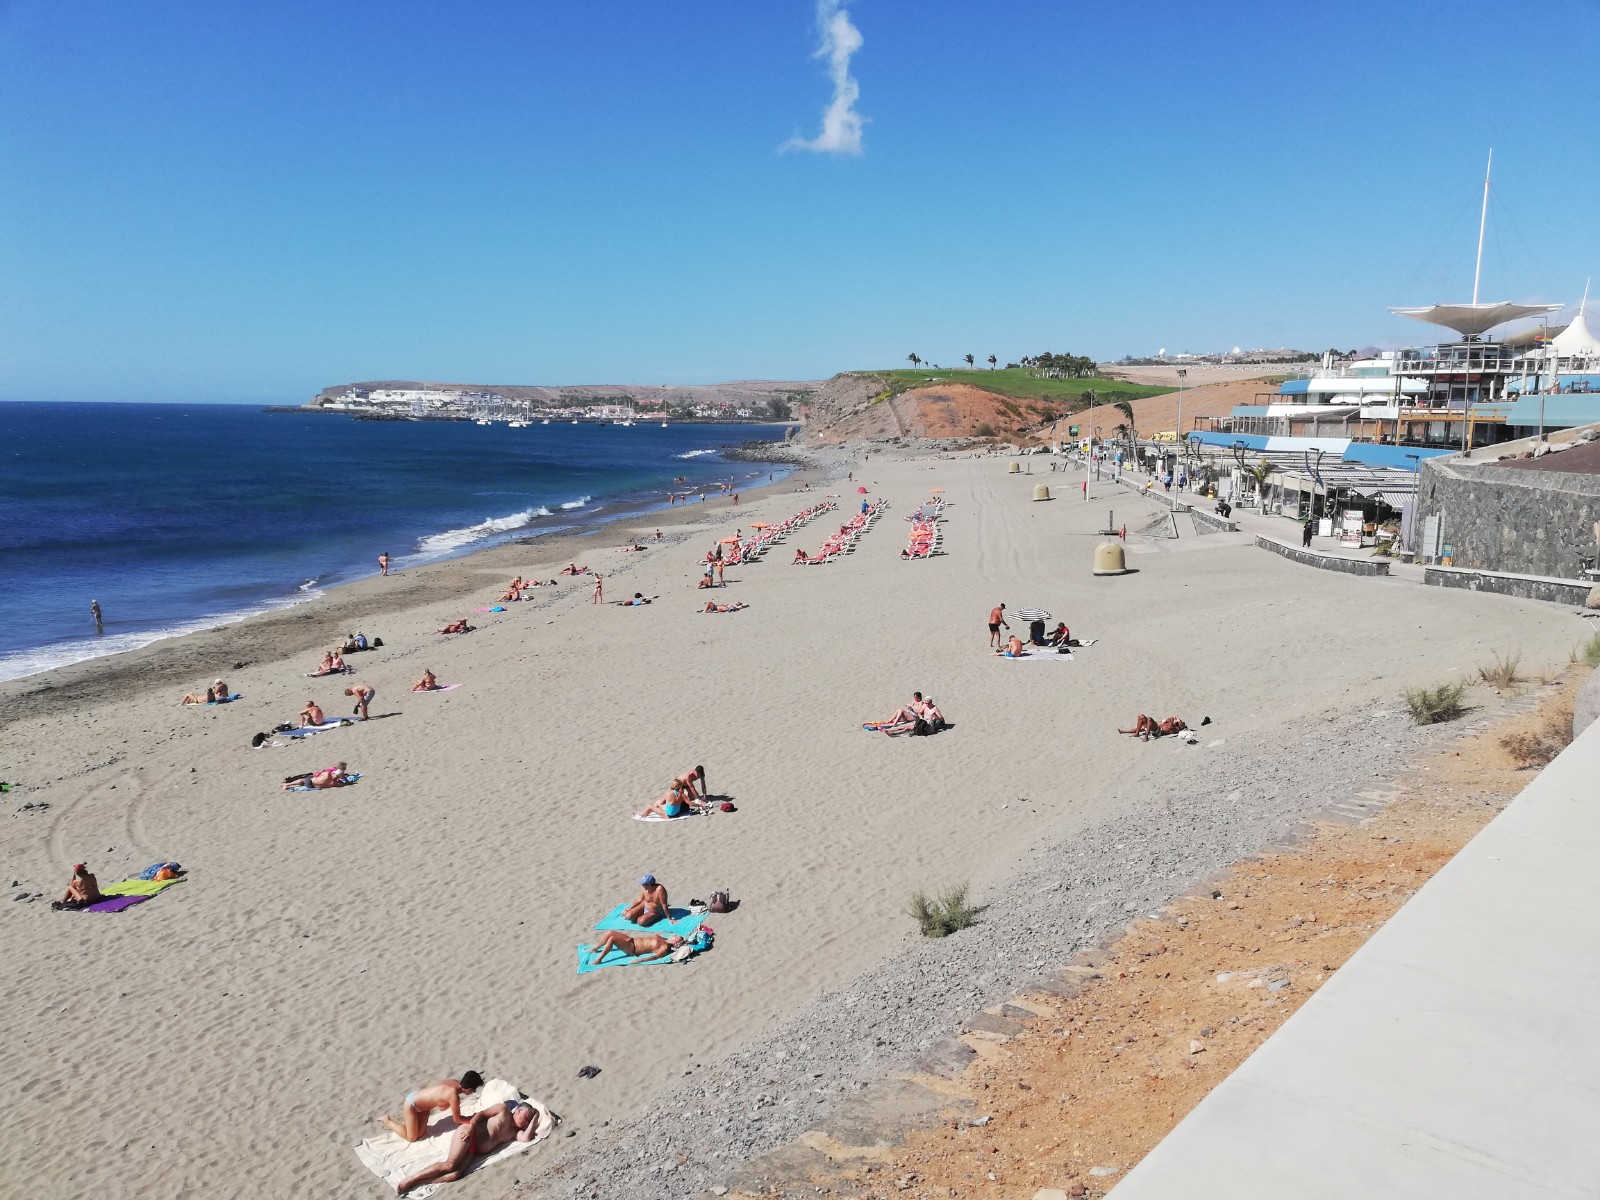 Meloneras Plajı'in fotoğrafı parlak kum yüzey ile